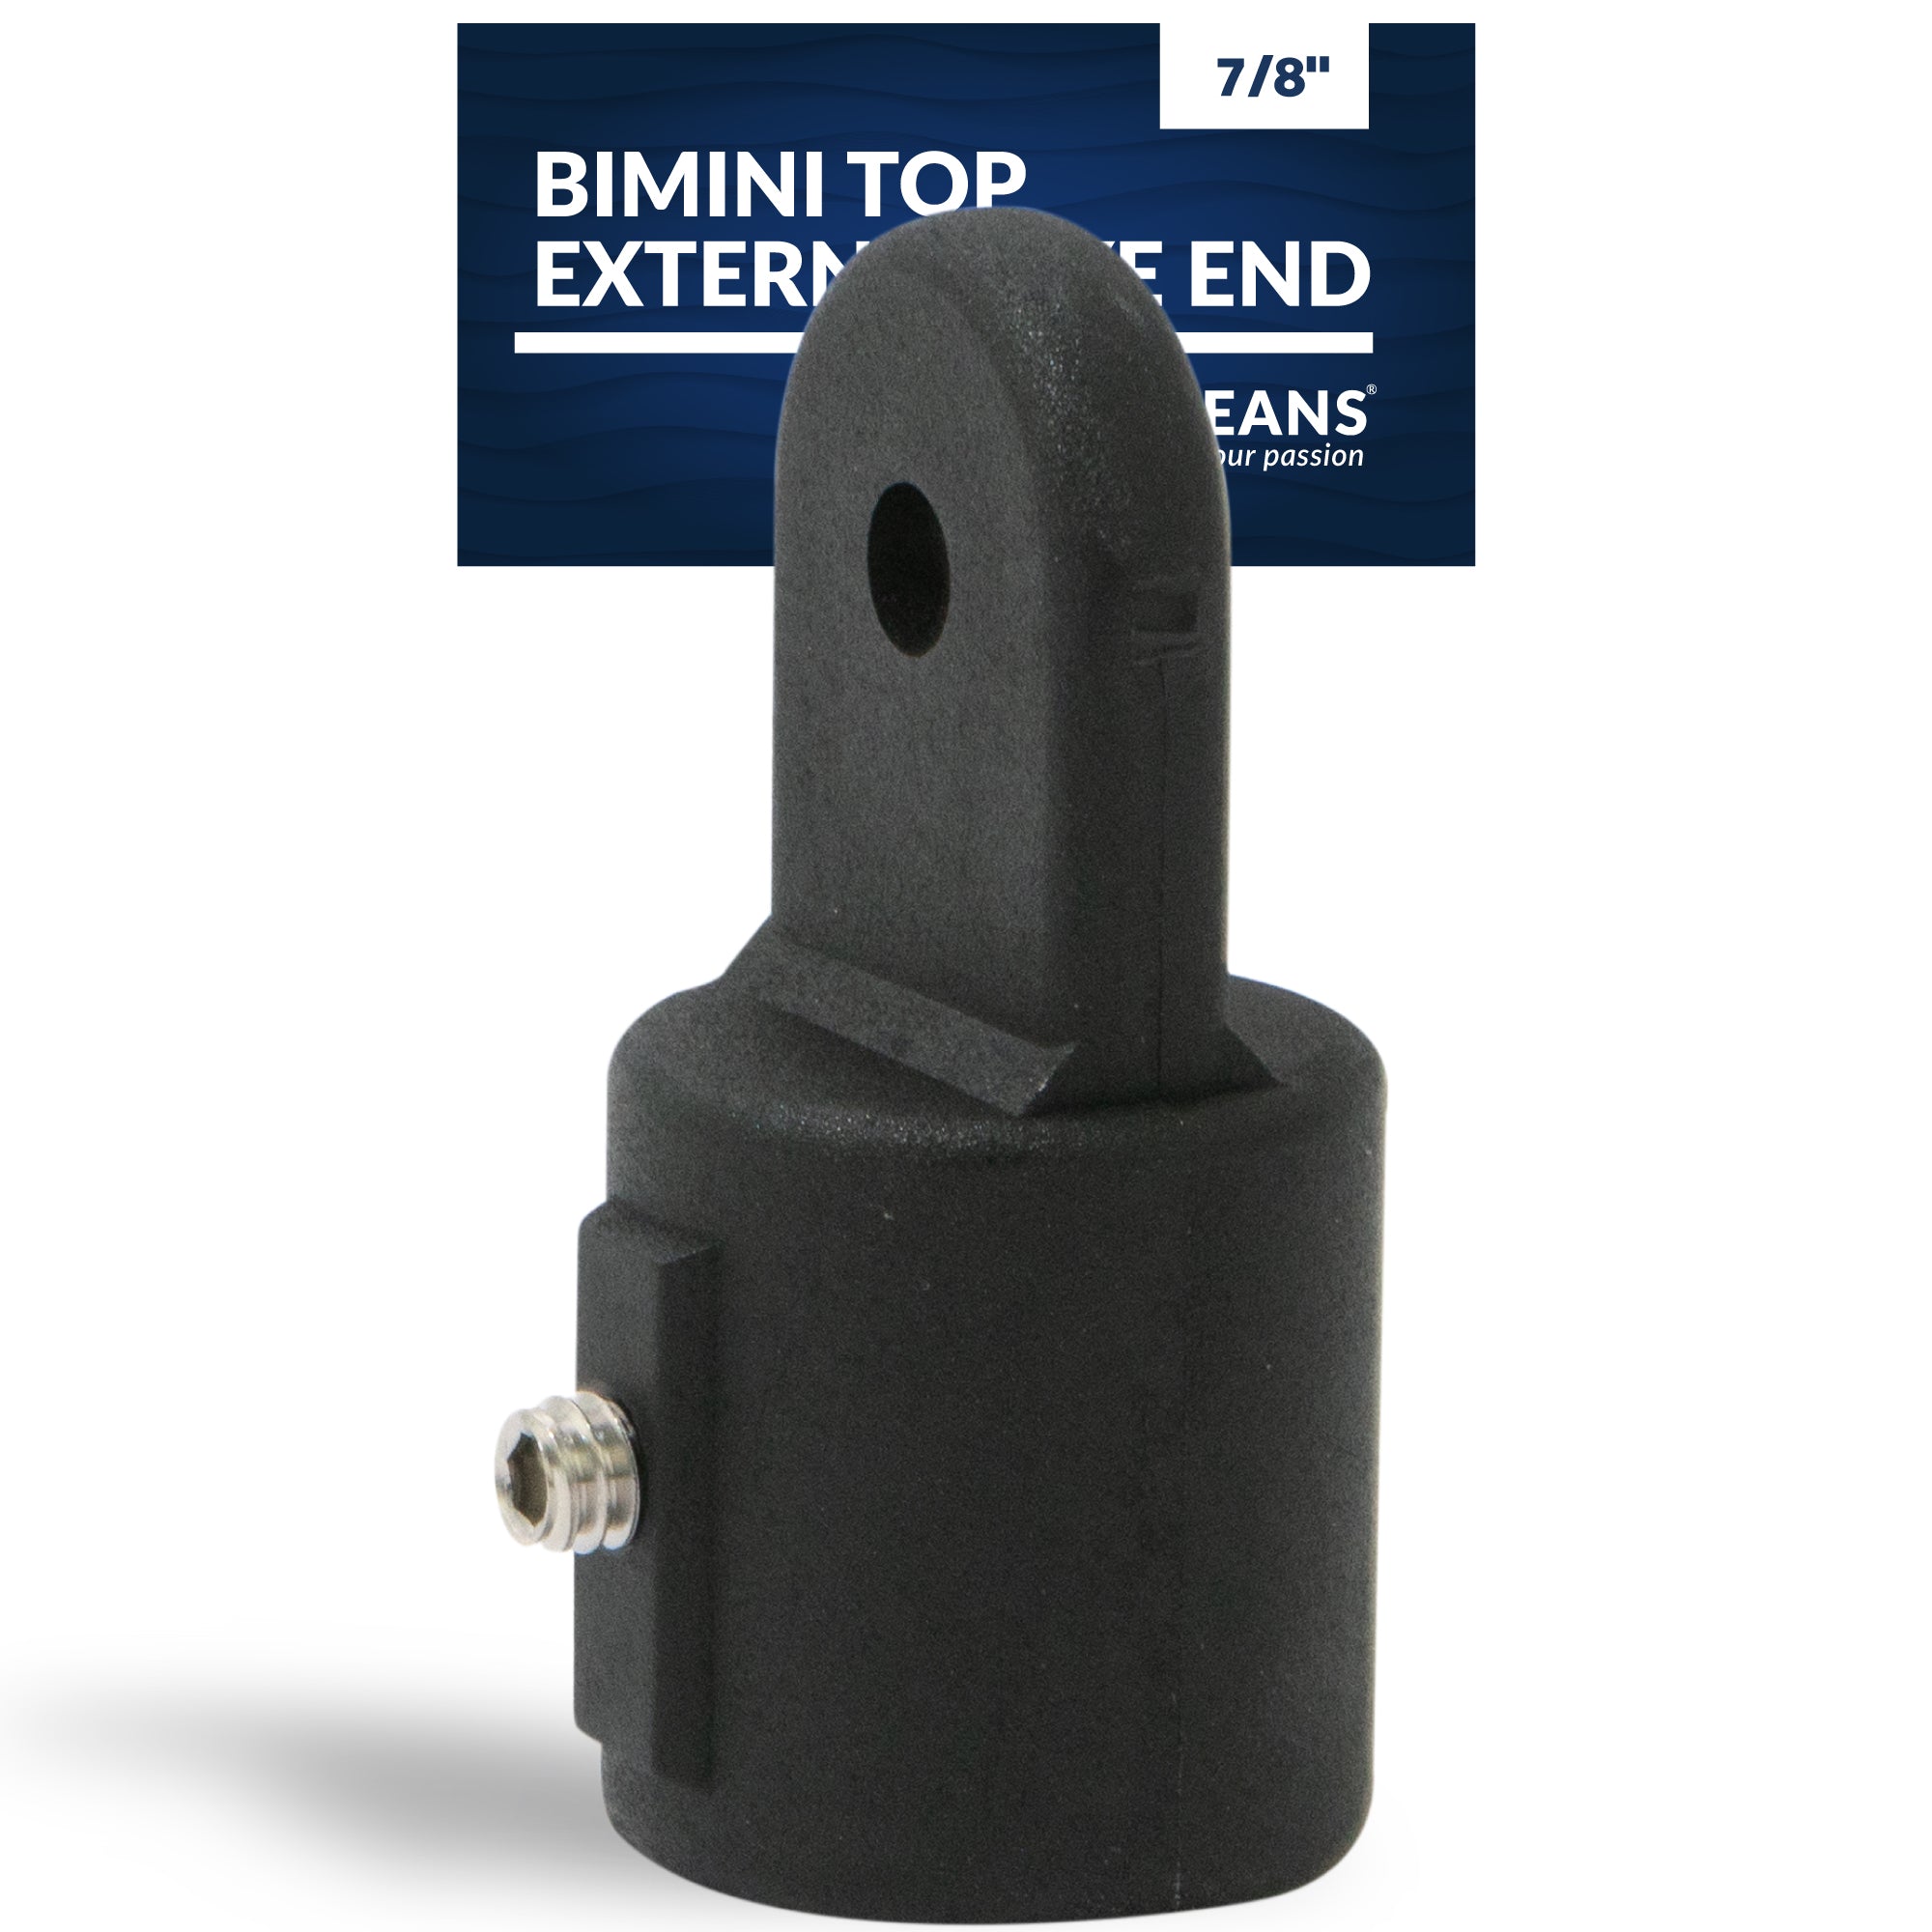 Bimini Top External Eye End, 7/8" Black Nylon - FO3845